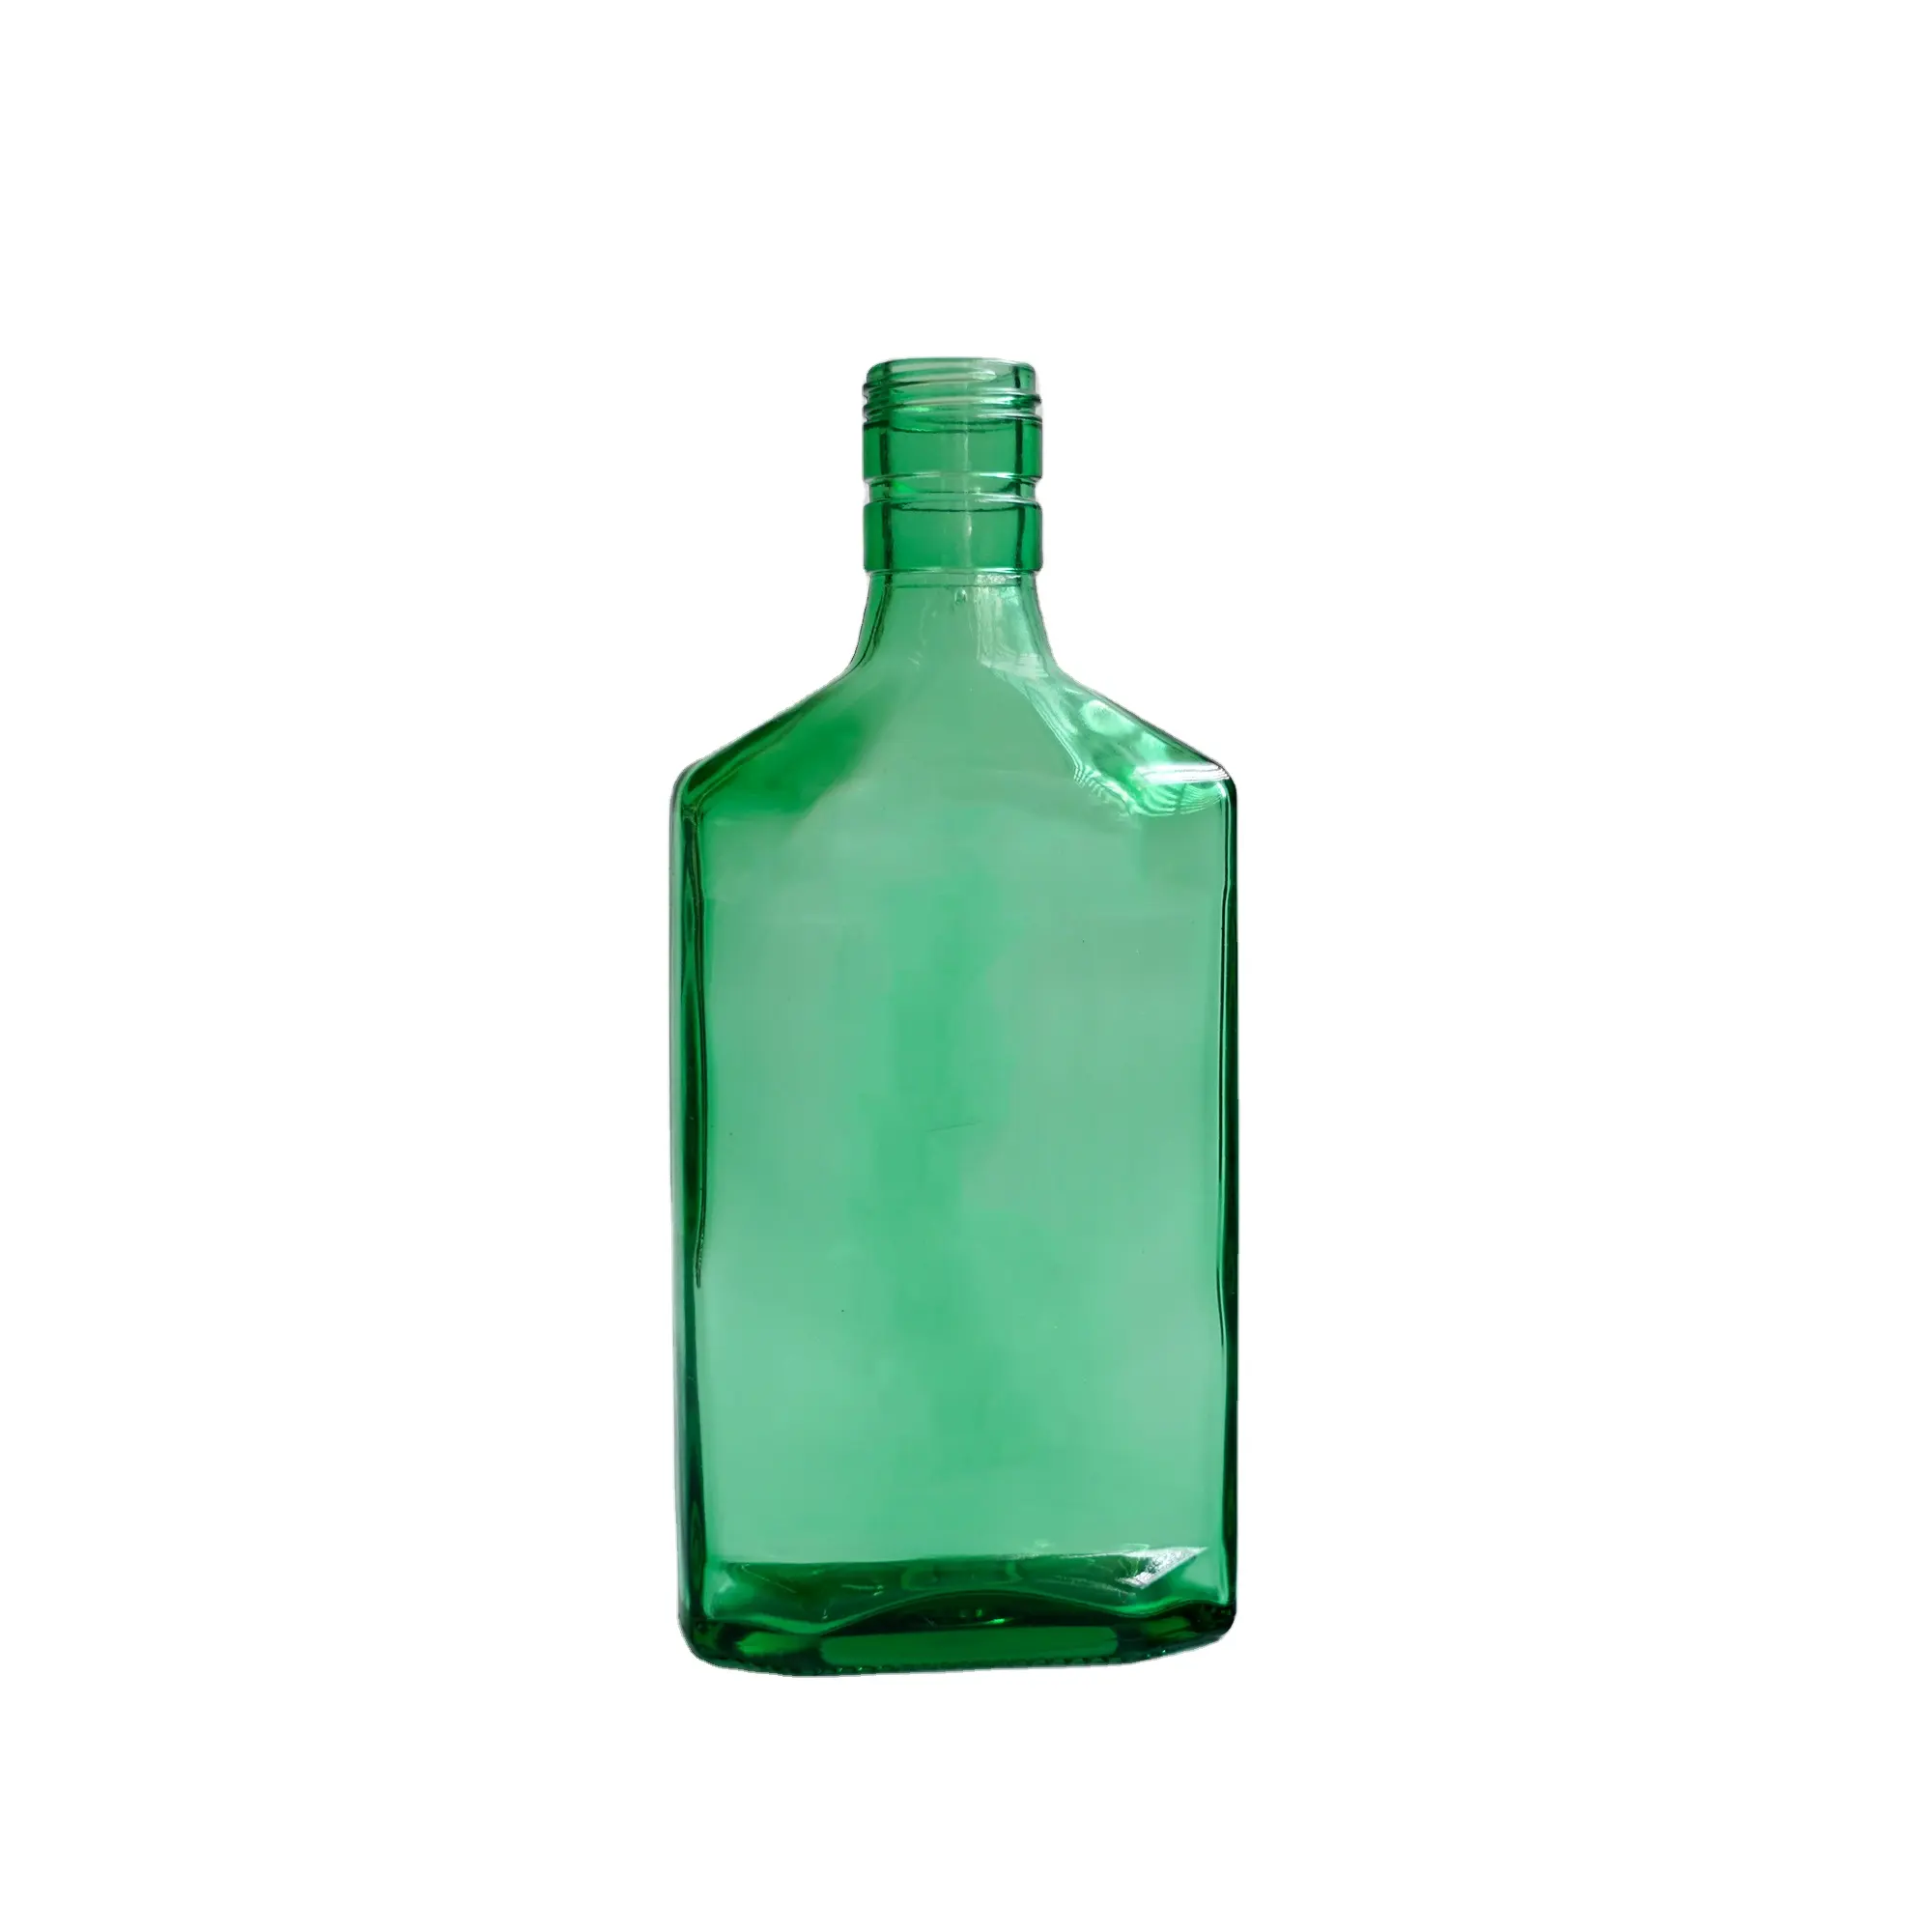 375ml green flat glass bottle glass wine bottle packaging for alcohol liquor vodka whiskey liqueur tequila gin flat bottle